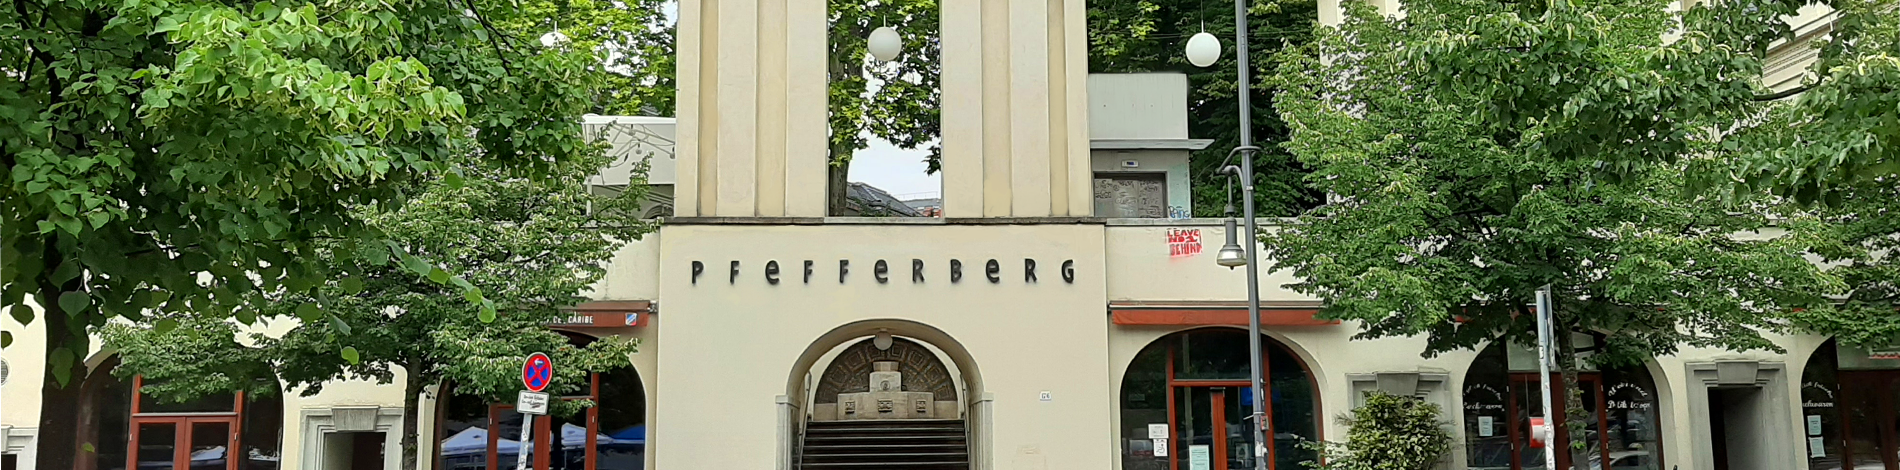 Die Fassade des Pfefferbergs von der Schönhauser Allee